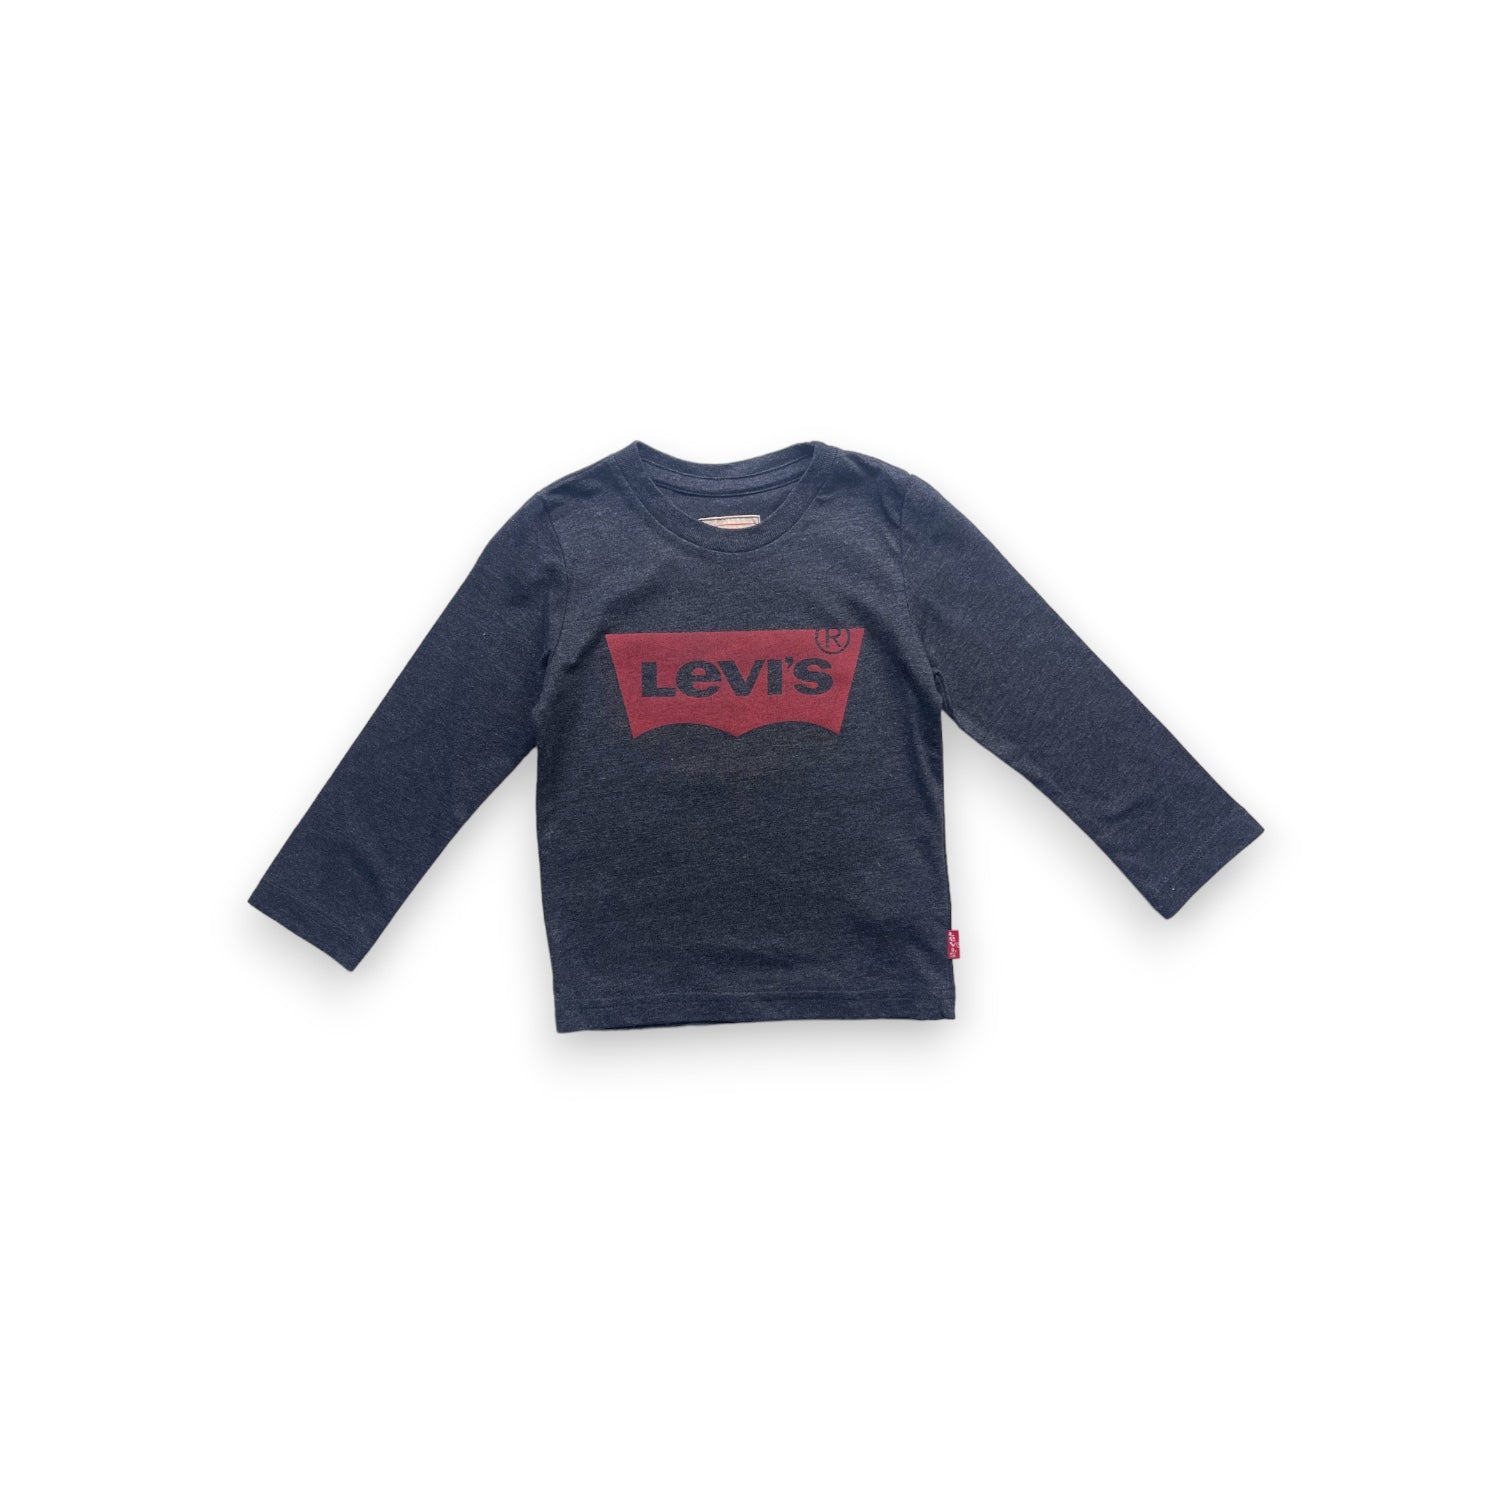 LEVI’S - Tshirt  gris foncé logo rouge - 2 ans